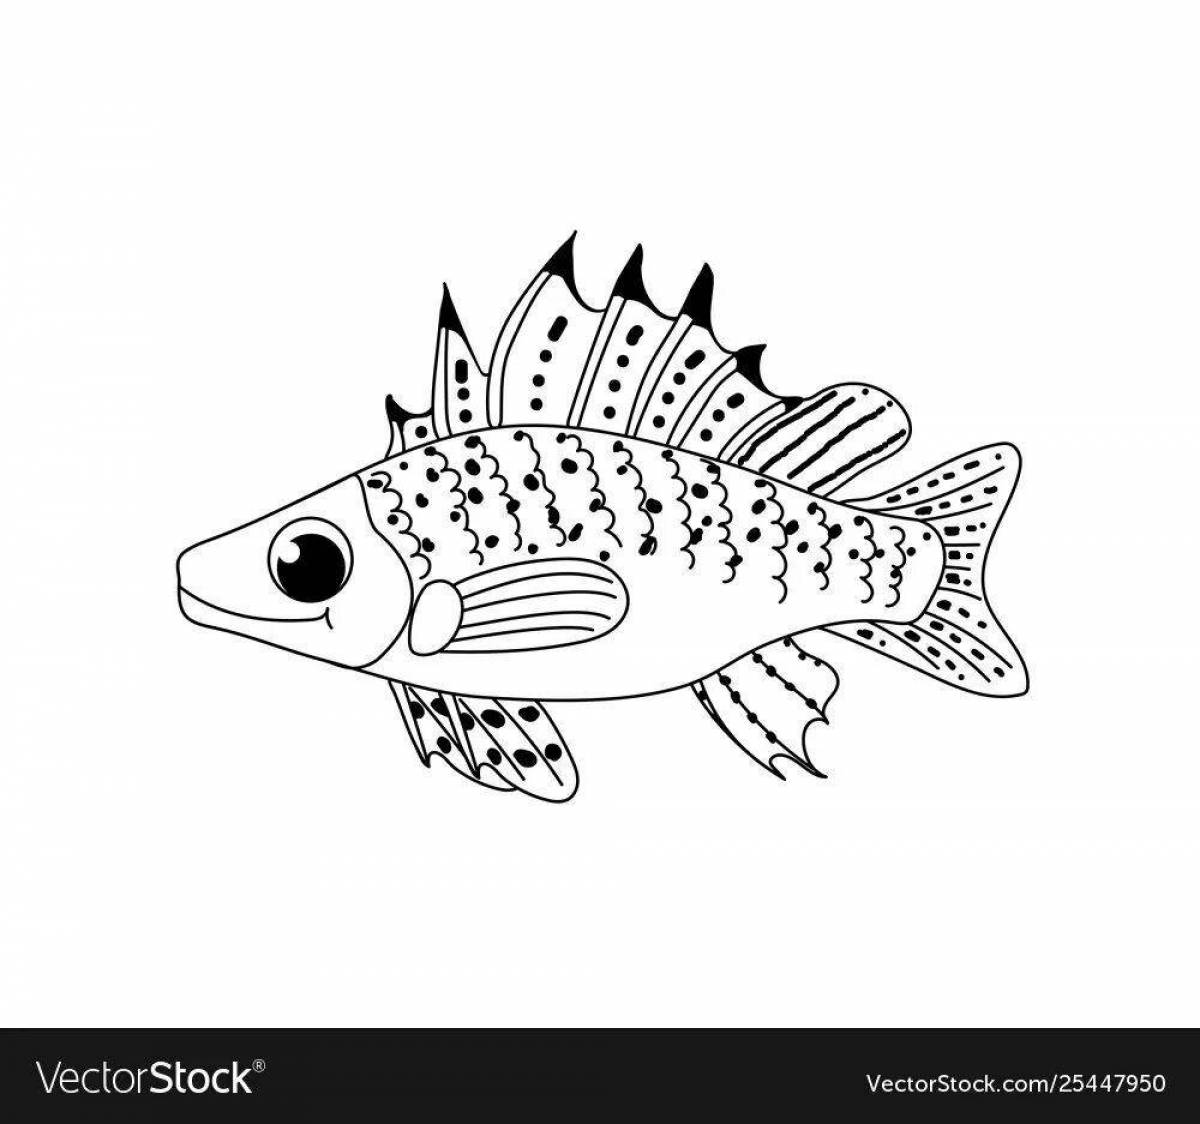 Impressive ruff fish coloring page